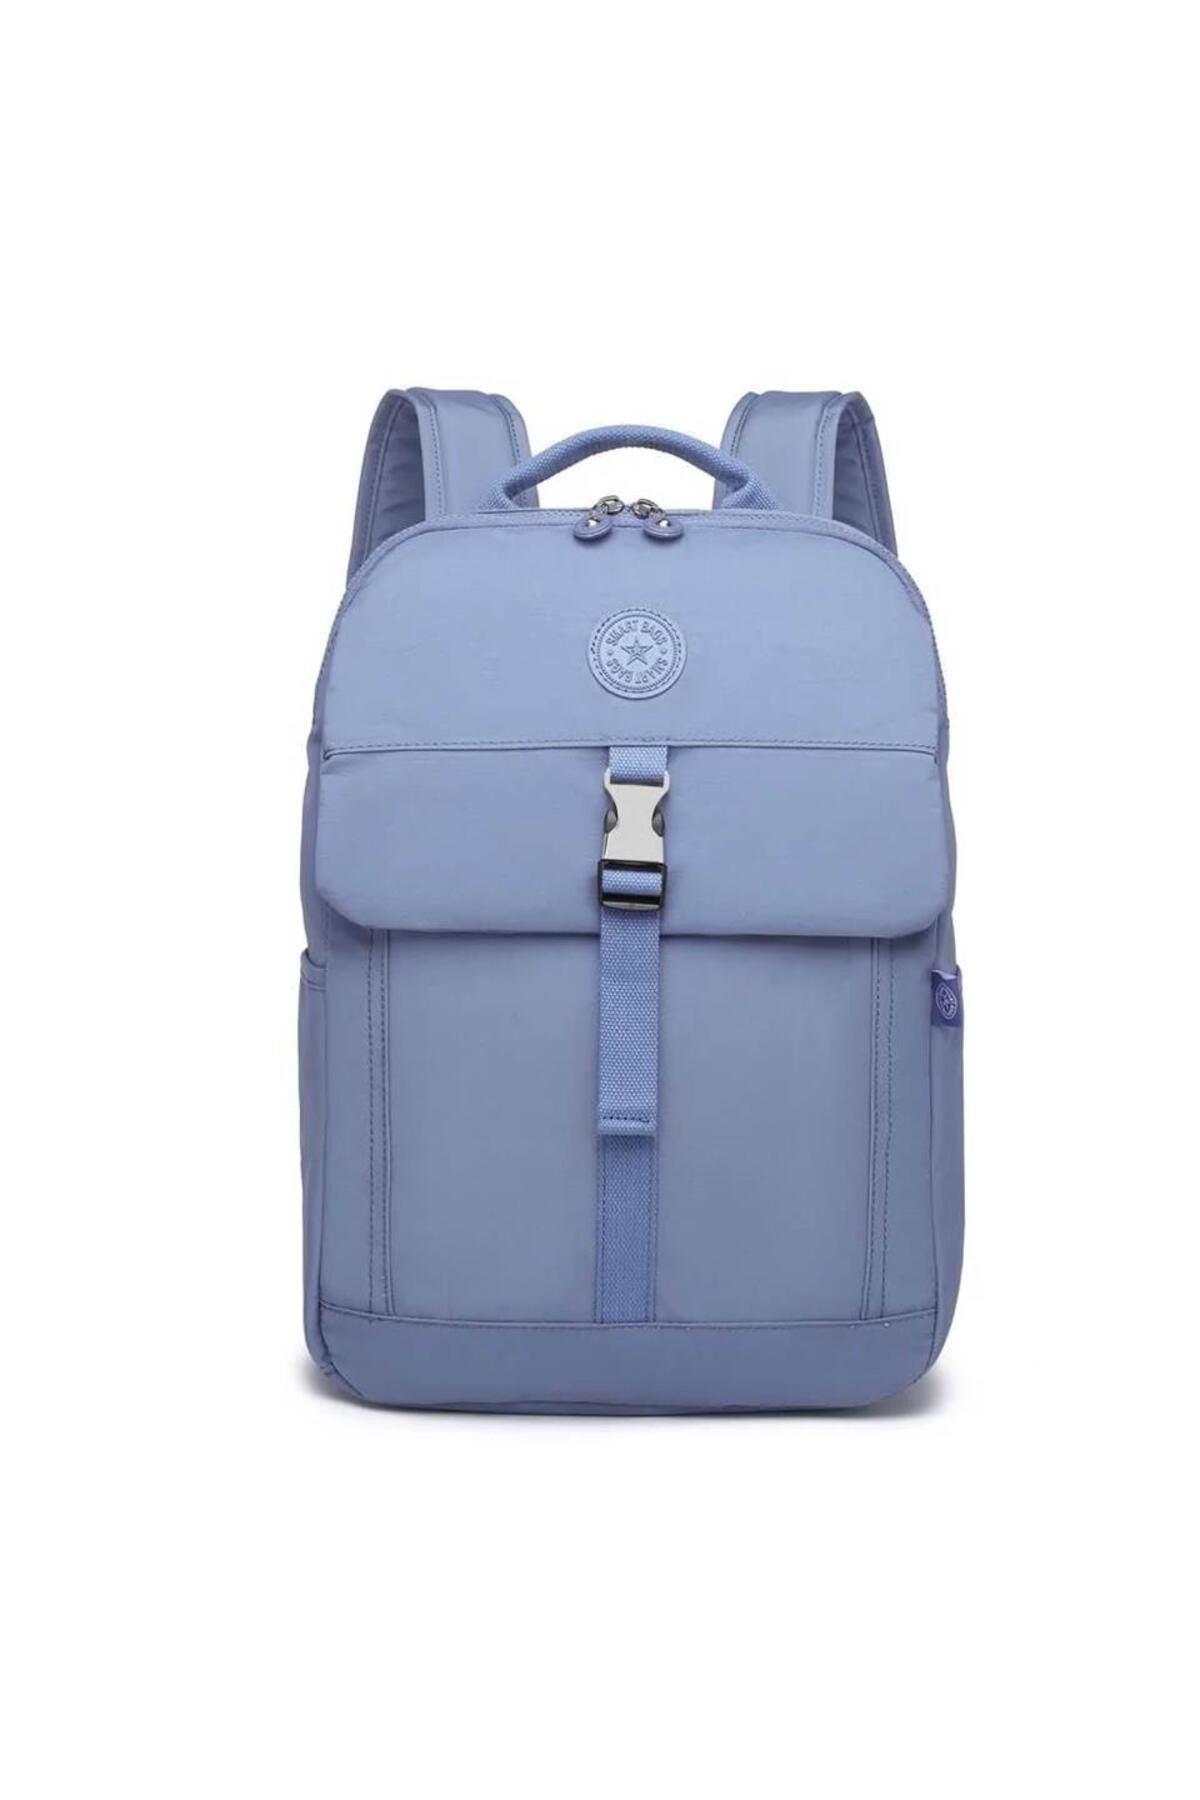 Smart Bags 3183 Sırt Çantası Jean Mavi